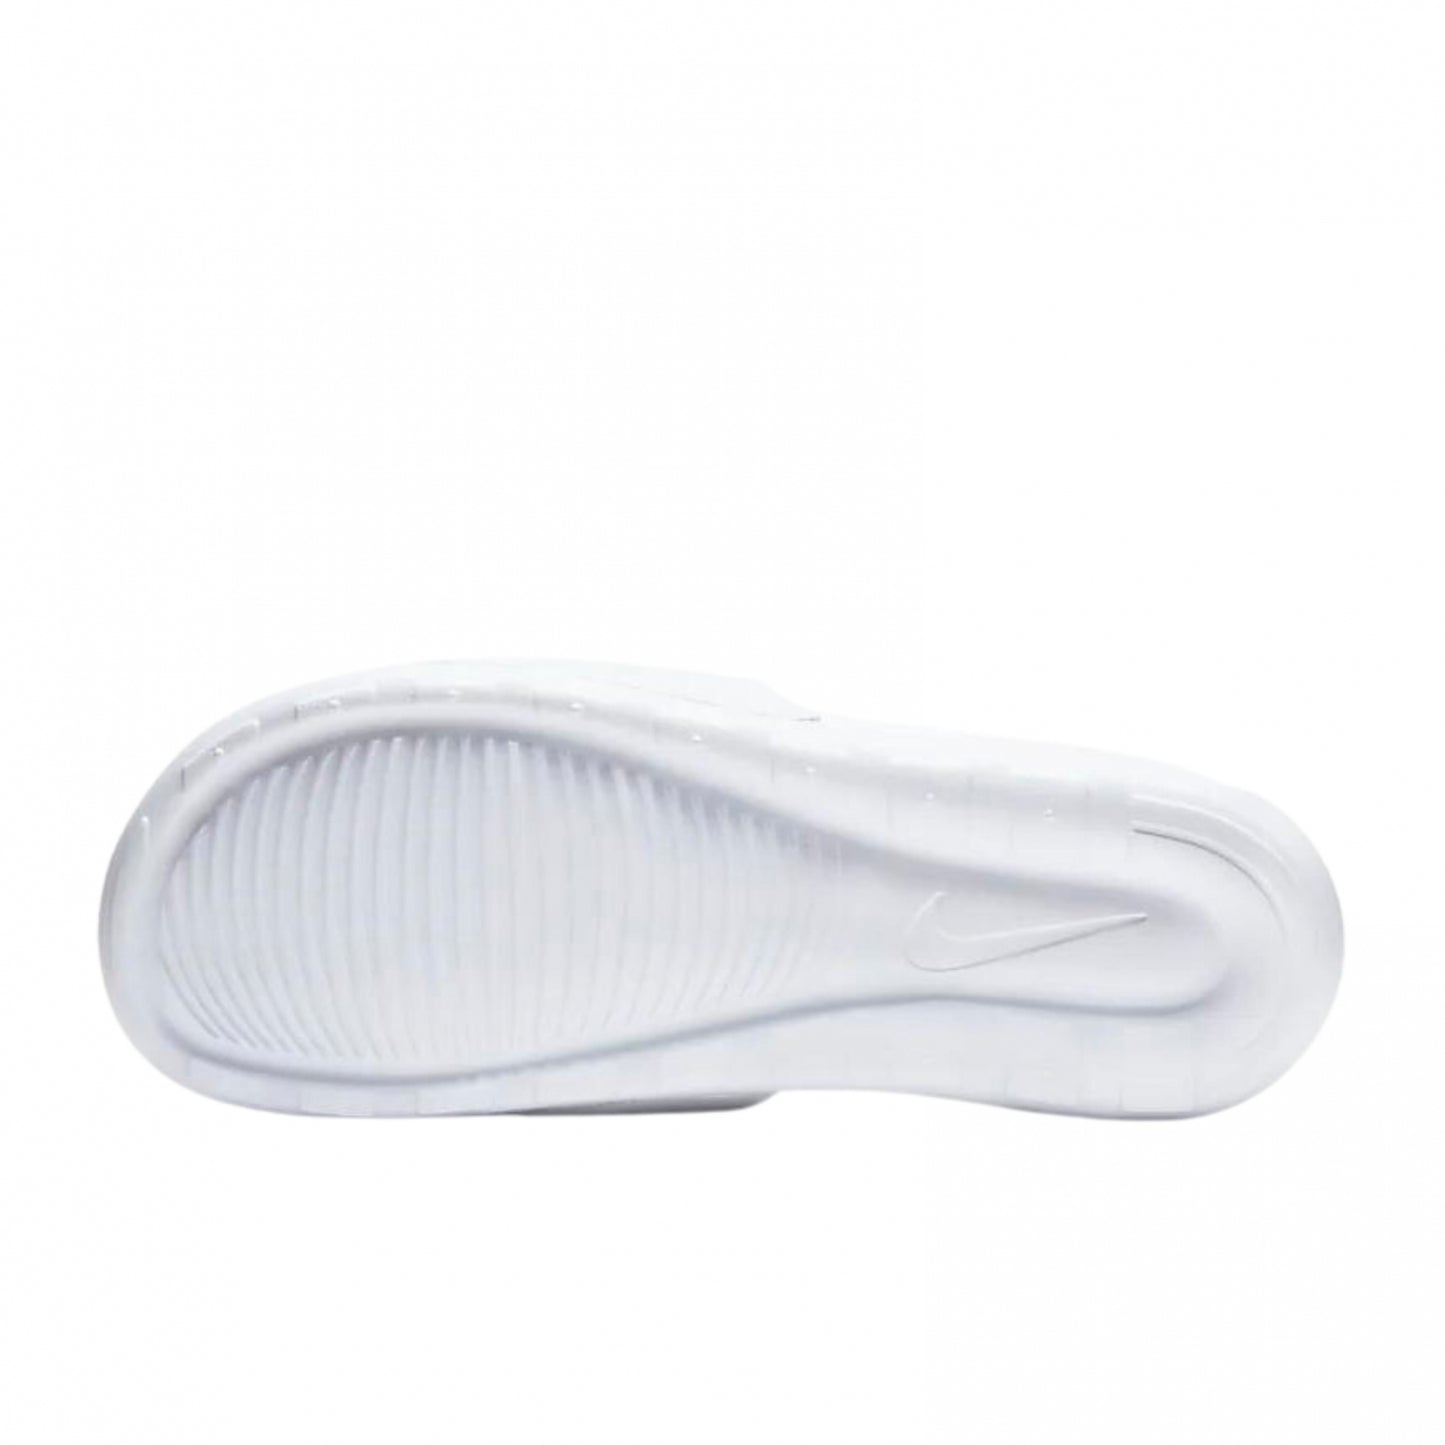 Slipper Nike Victori One Slide WHITE